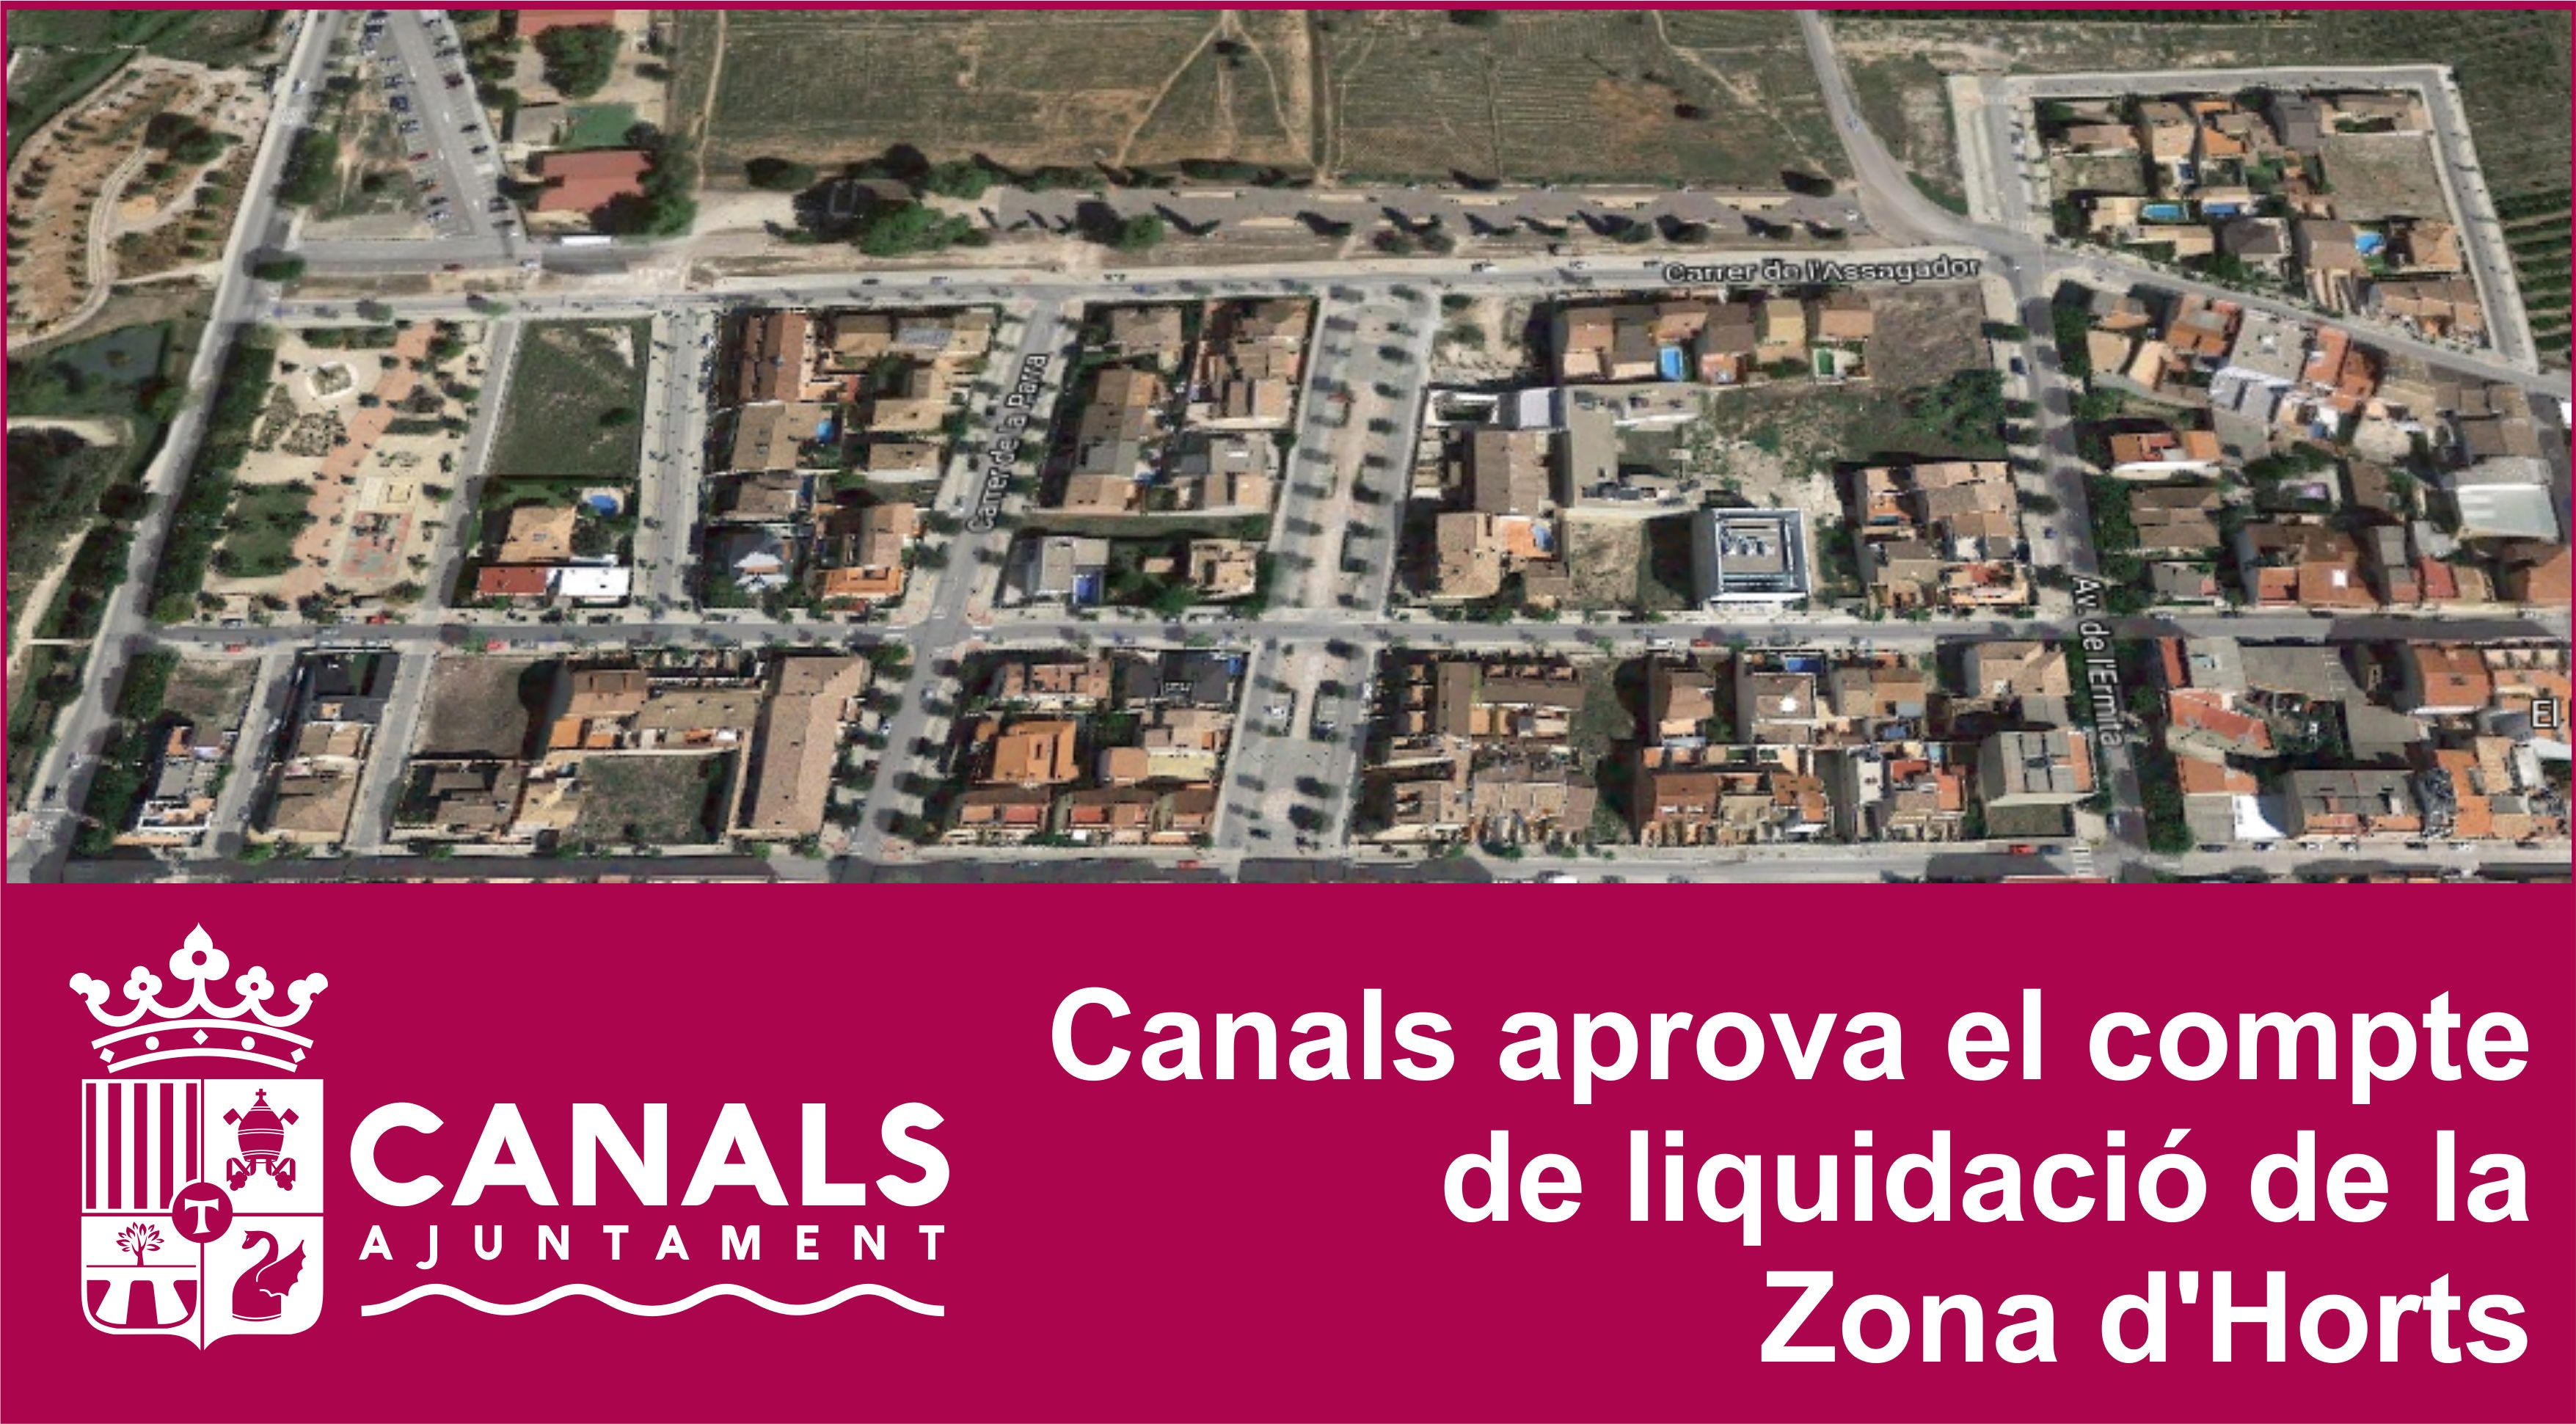 2017.04.19 Zona d'Horts. Ajuntament de Canals